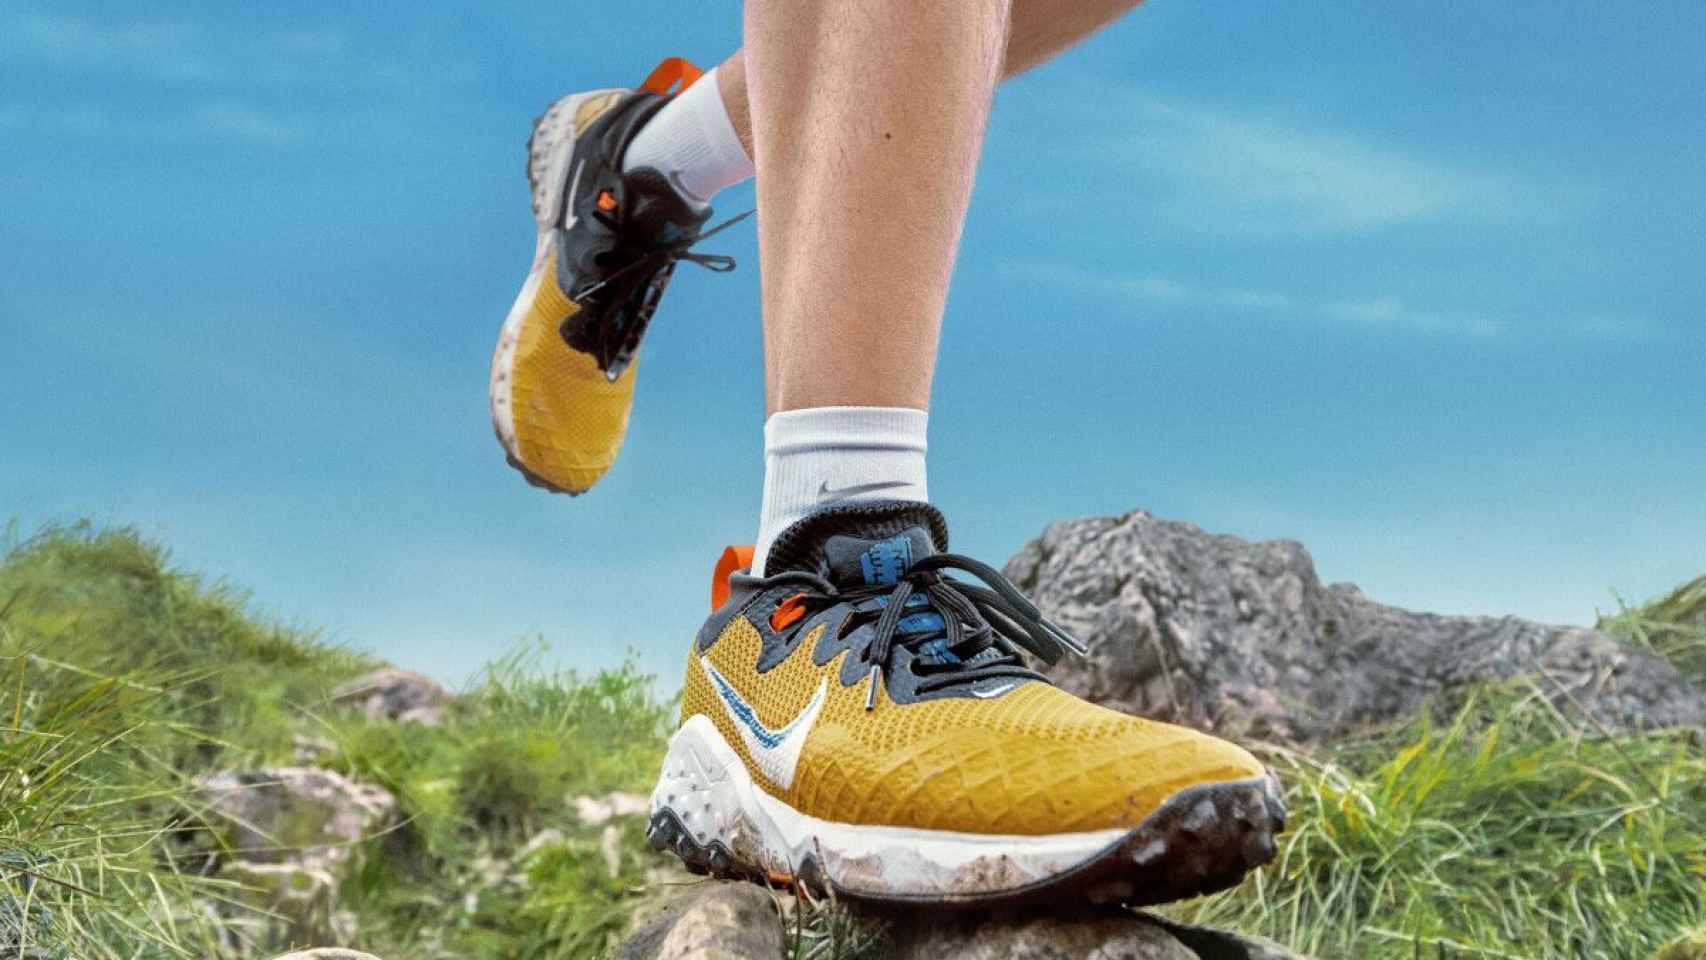 Zapatillas de Running de Hombre · Deportes · El Corte Inglés (463)